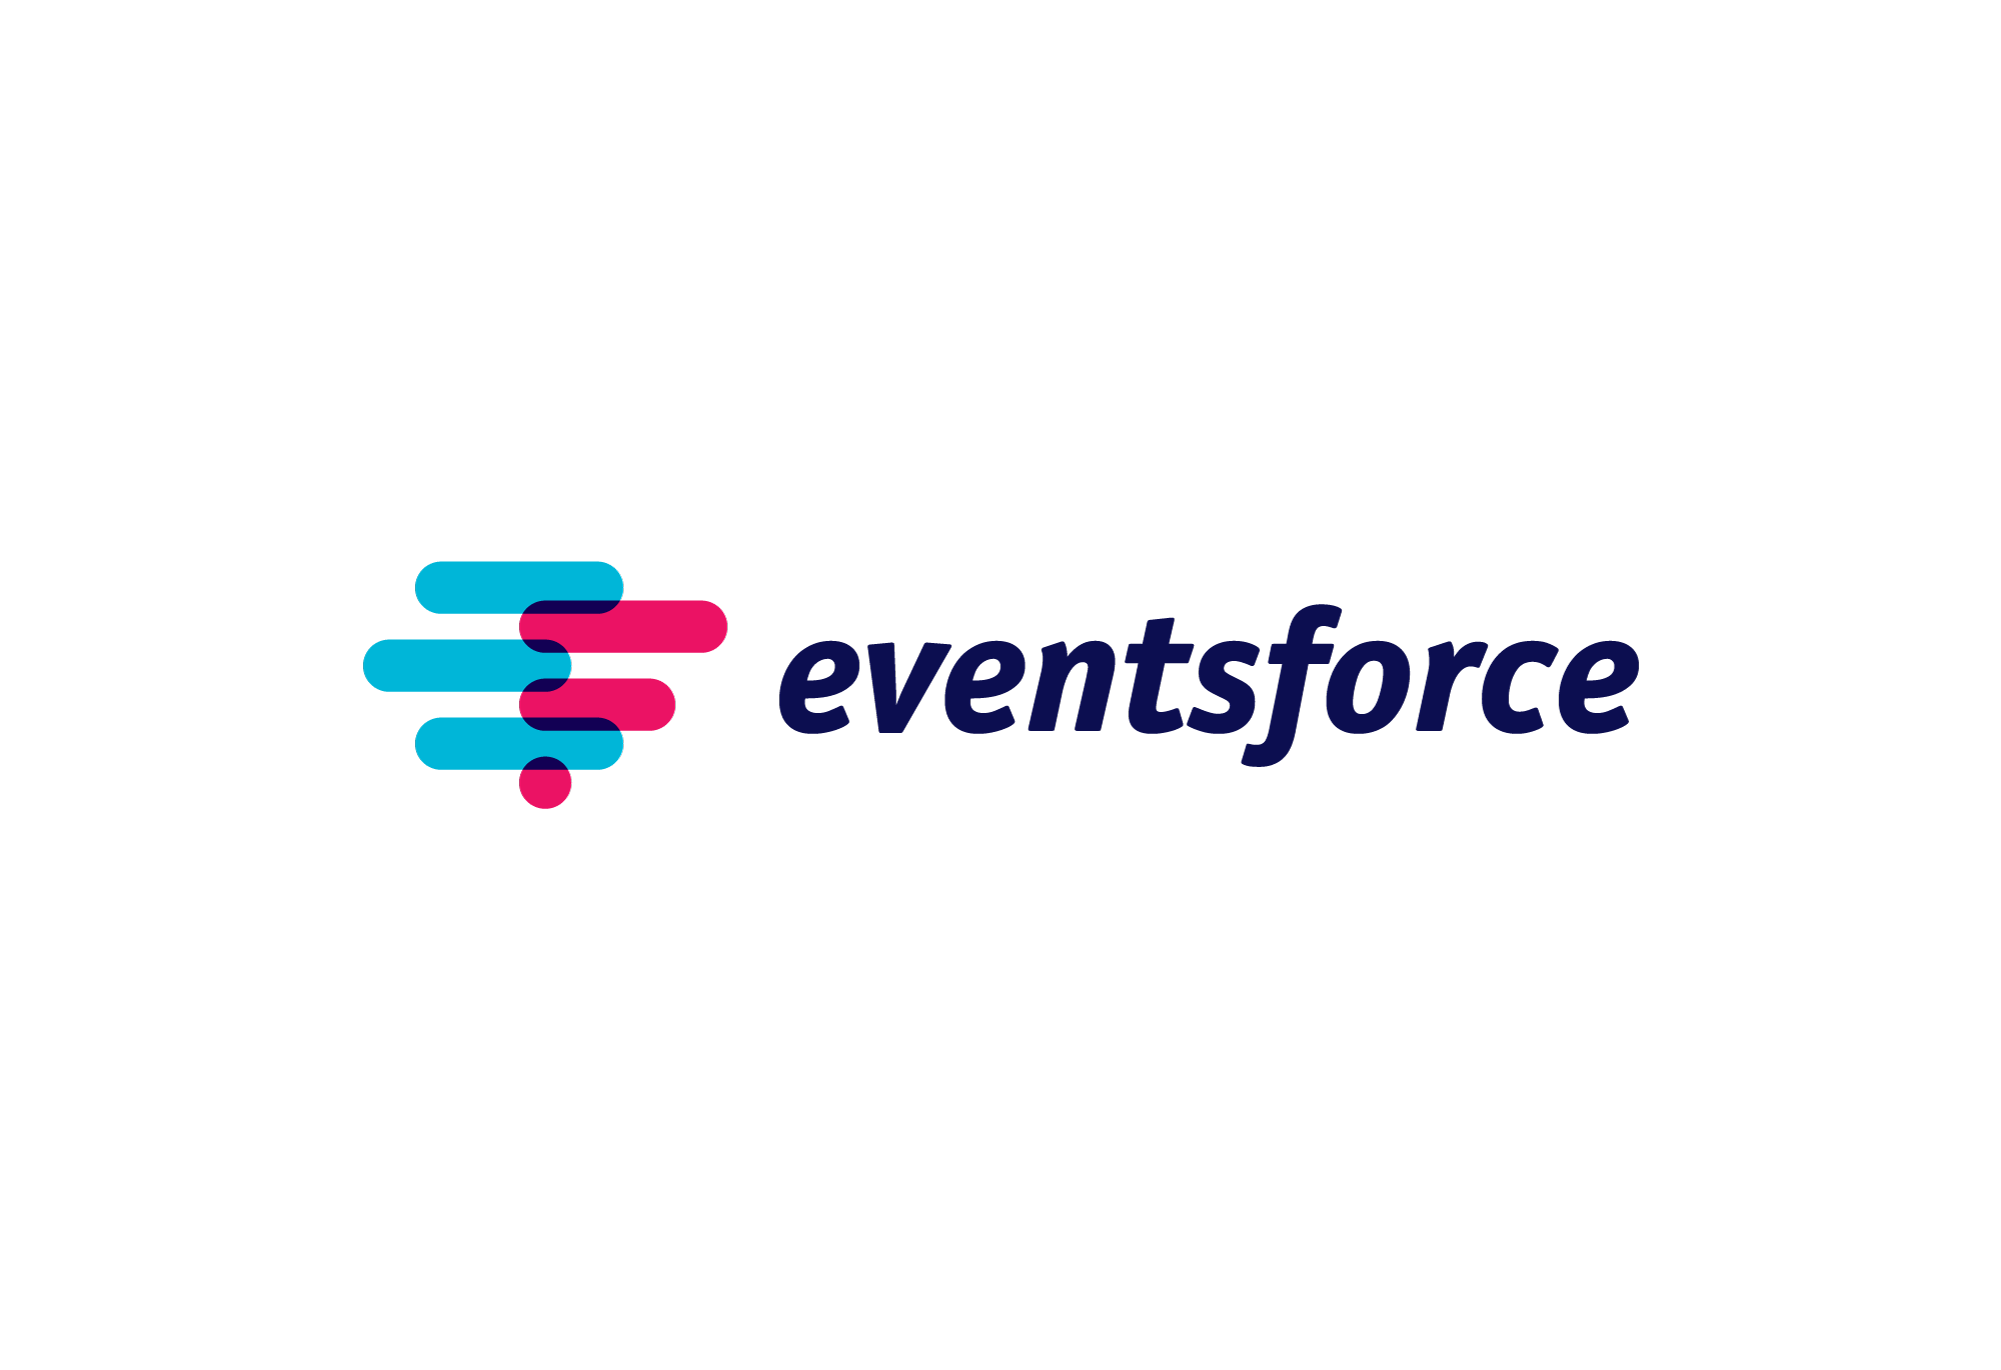 Eventsforce.com Identity Design